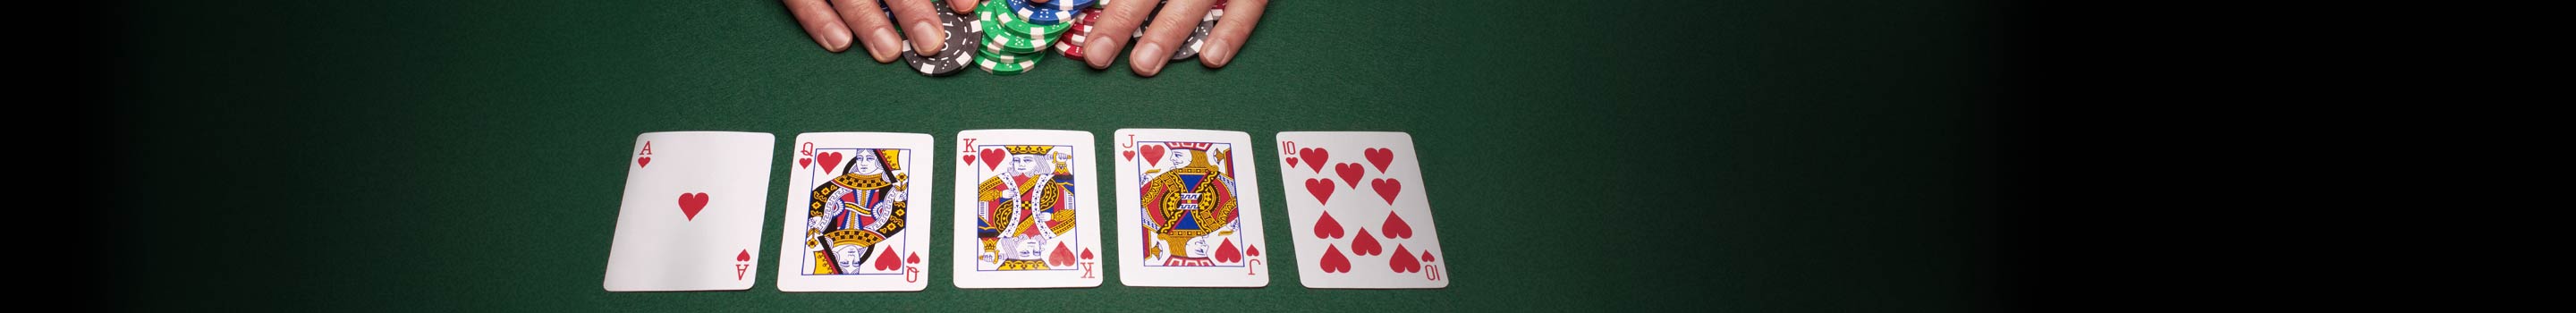 Układ kart w pokerze